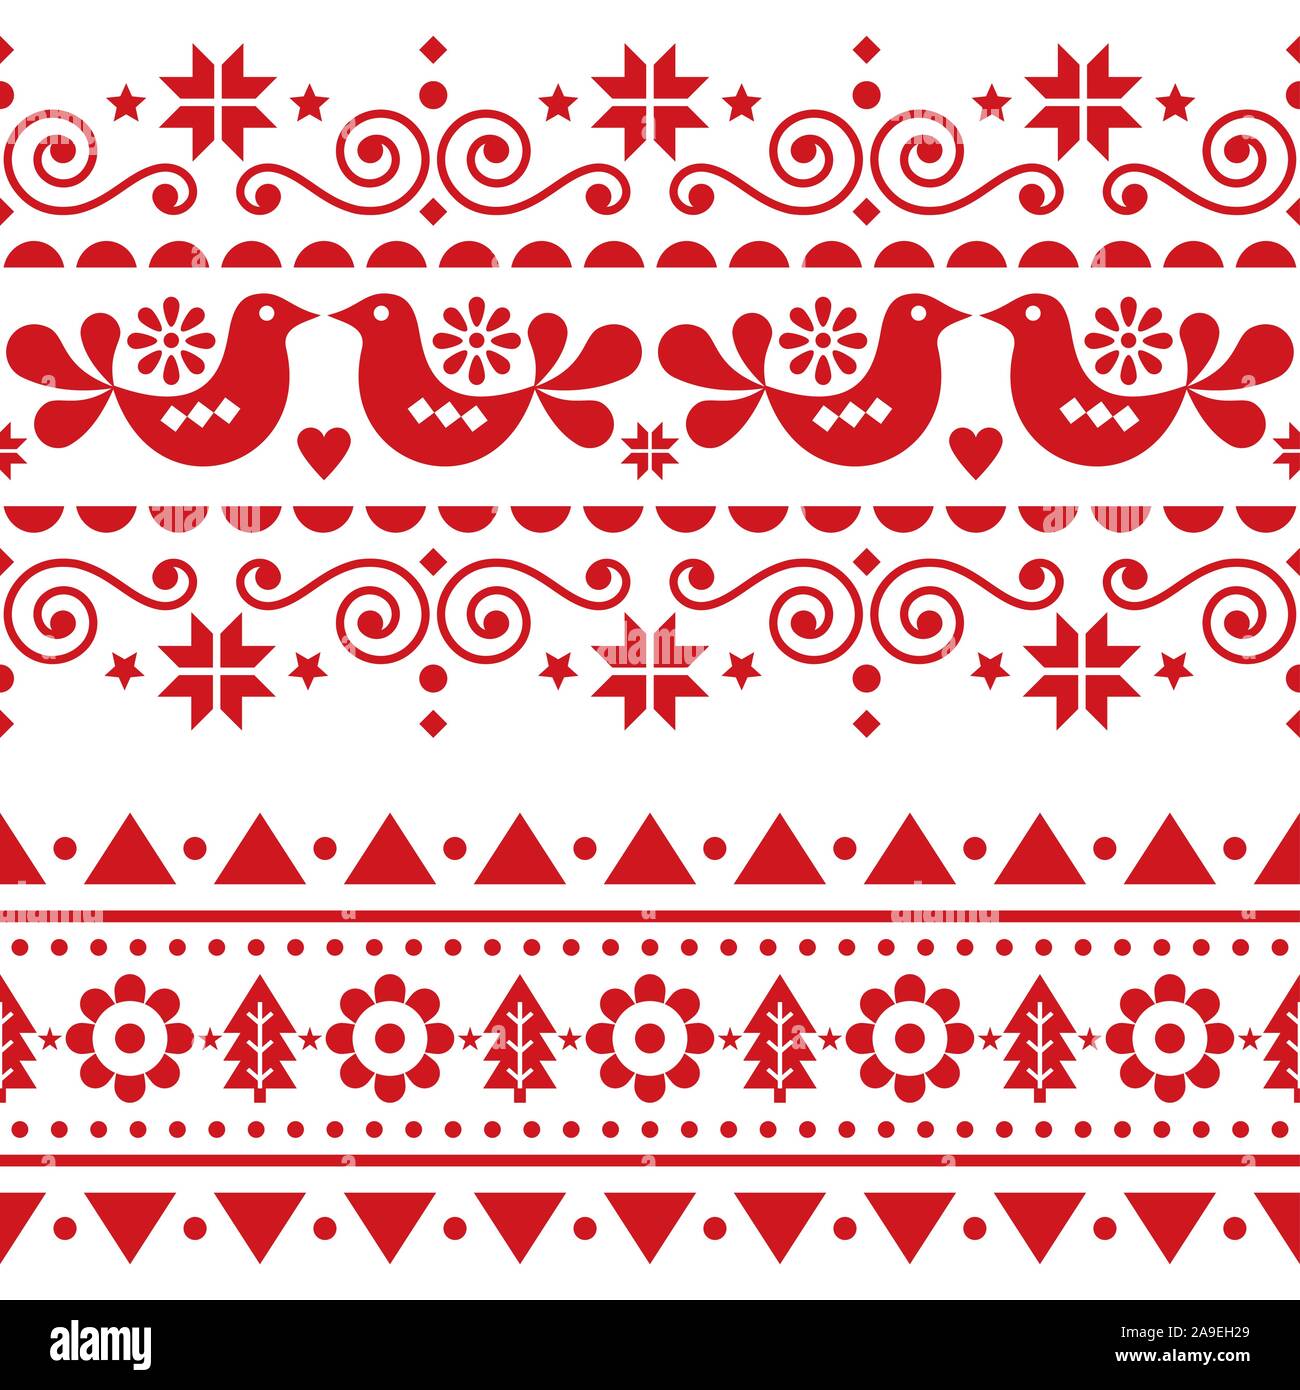 Natale scandinavo folk vettore seamless pattern lunghe, ripetitive inverno carino il design nordico con uccelli, alberi di Natale, i fiocchi di neve e fiori Illustrazione Vettoriale